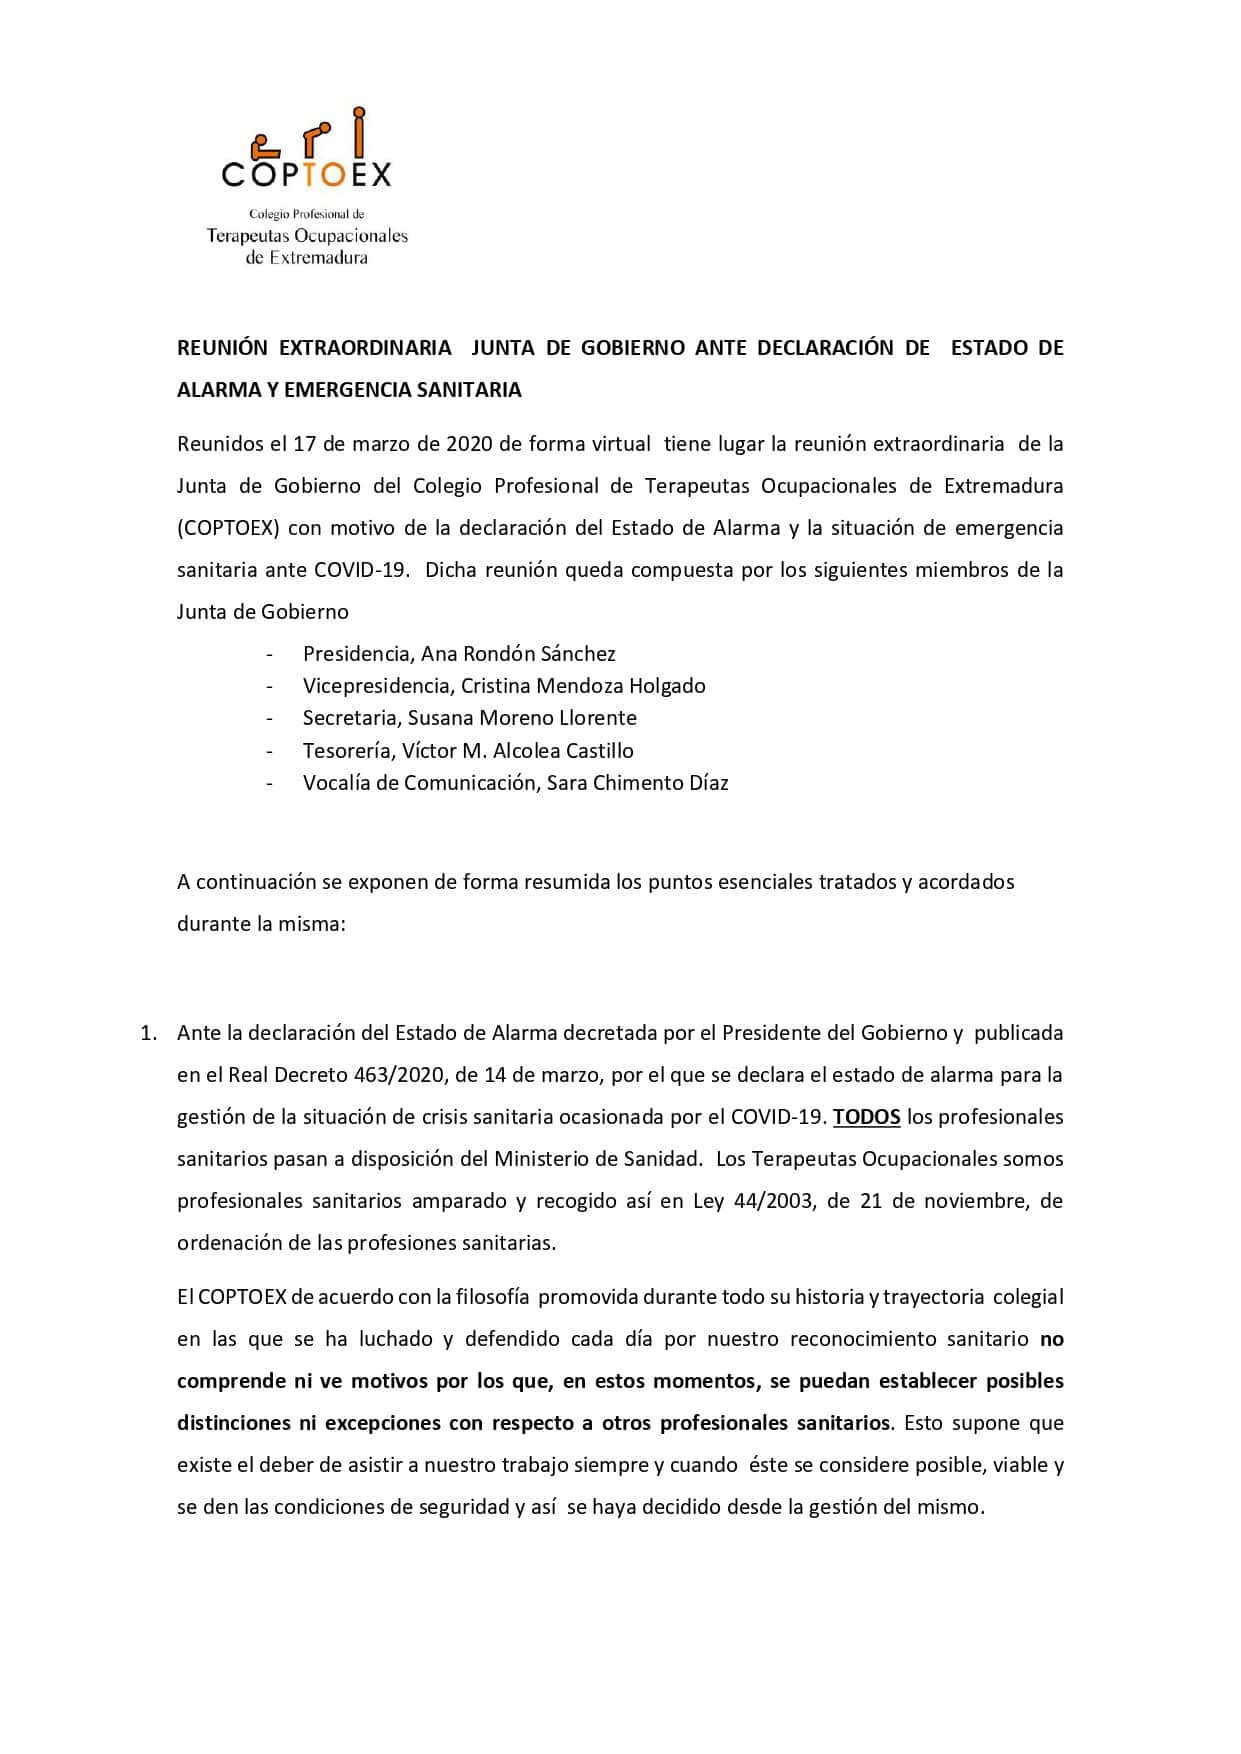 REUNION-EXTRAORDINARIA-JUNTA-DE-GOBIERNO-ANTE-DECLARACION-DE-ESTADO-DE-ALARMA-Y-EMERGENCIA-SANITARIA_page-0001